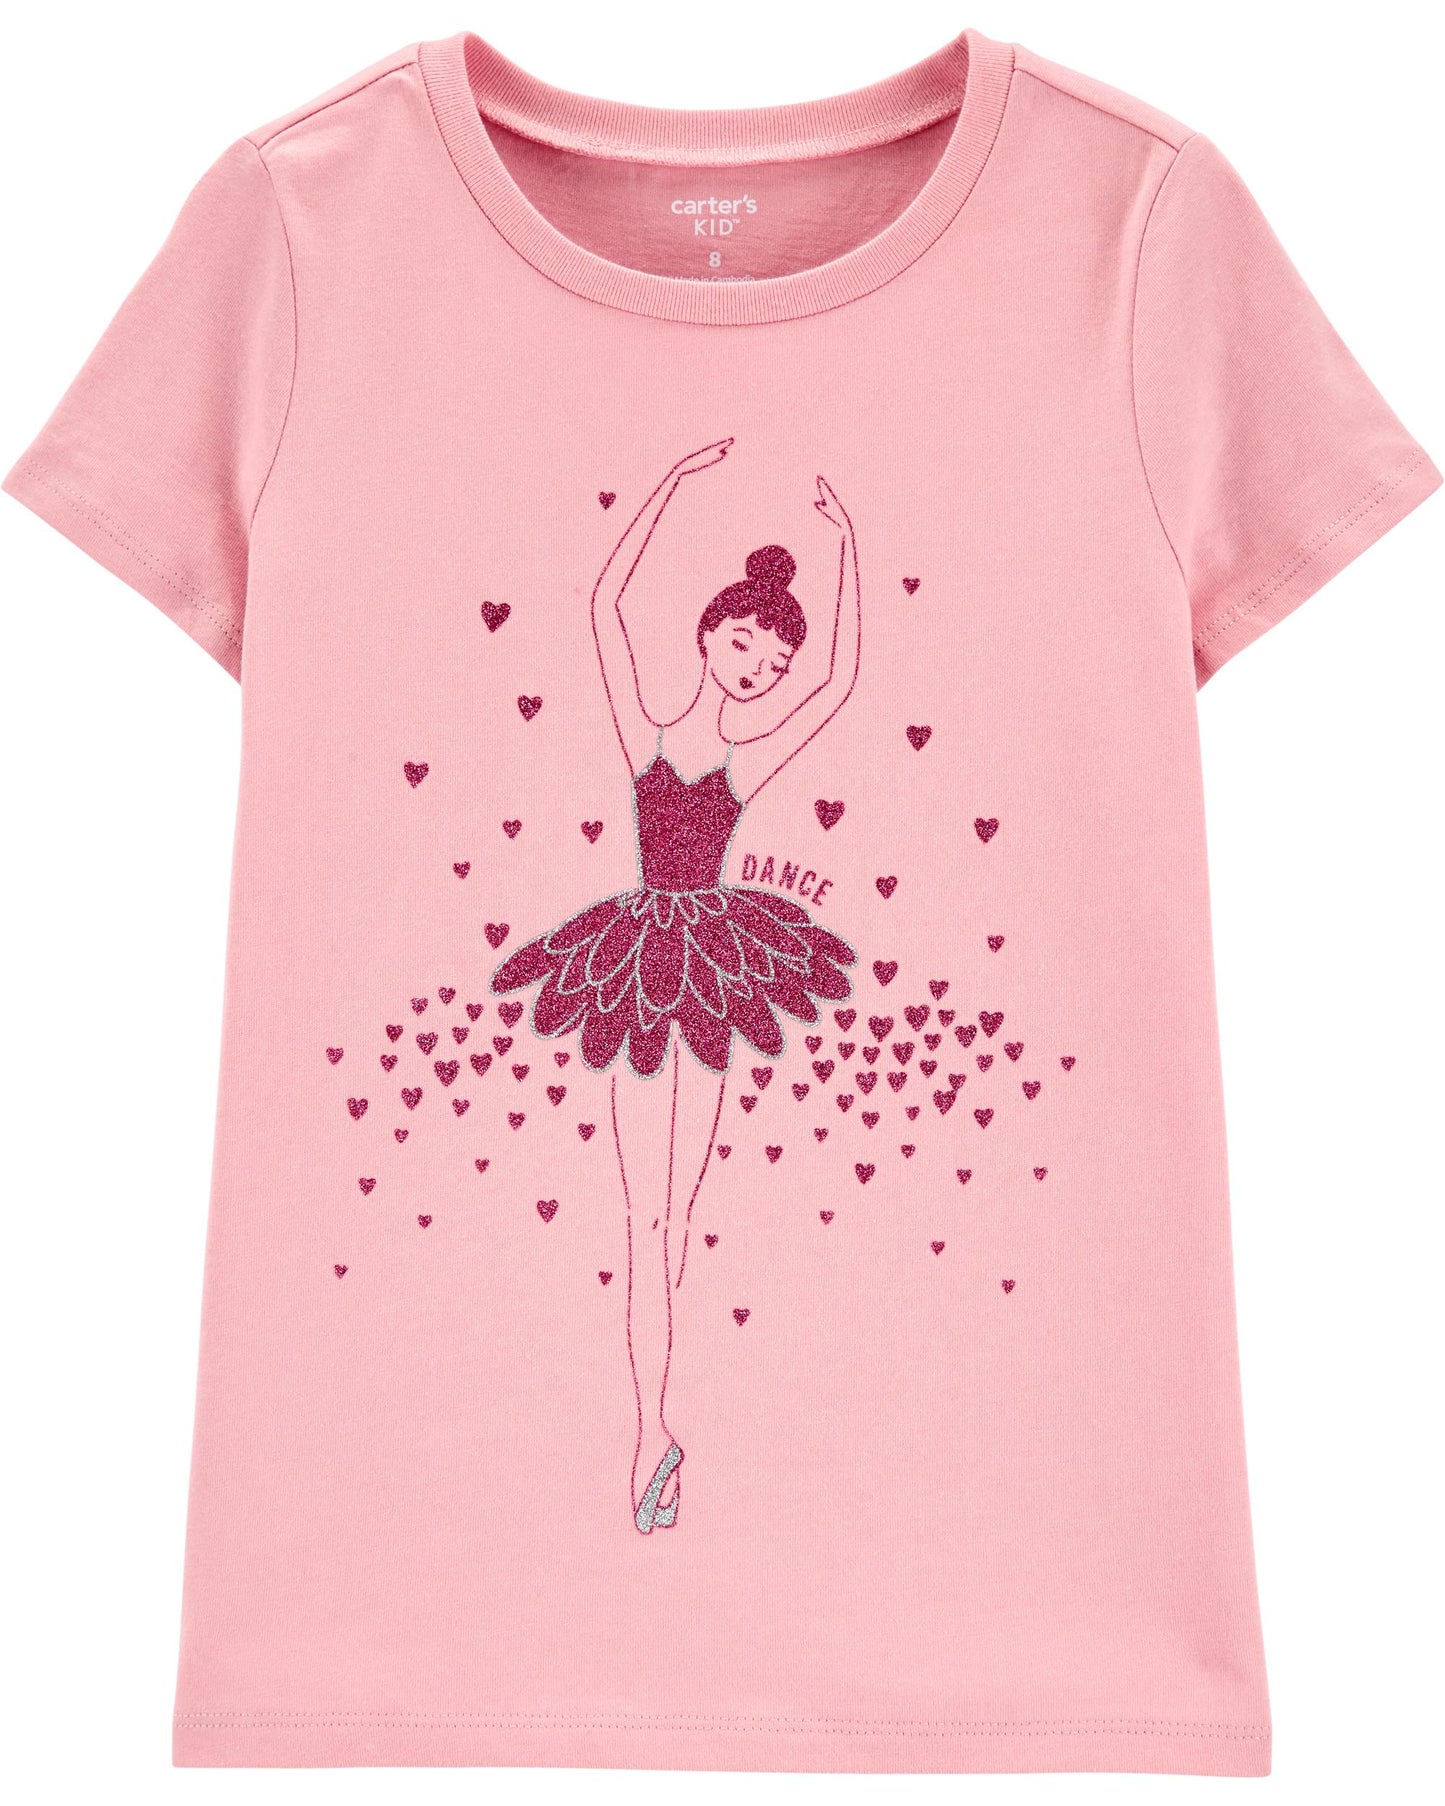 Camisa rosada bailarina Carter's niña 2-5t